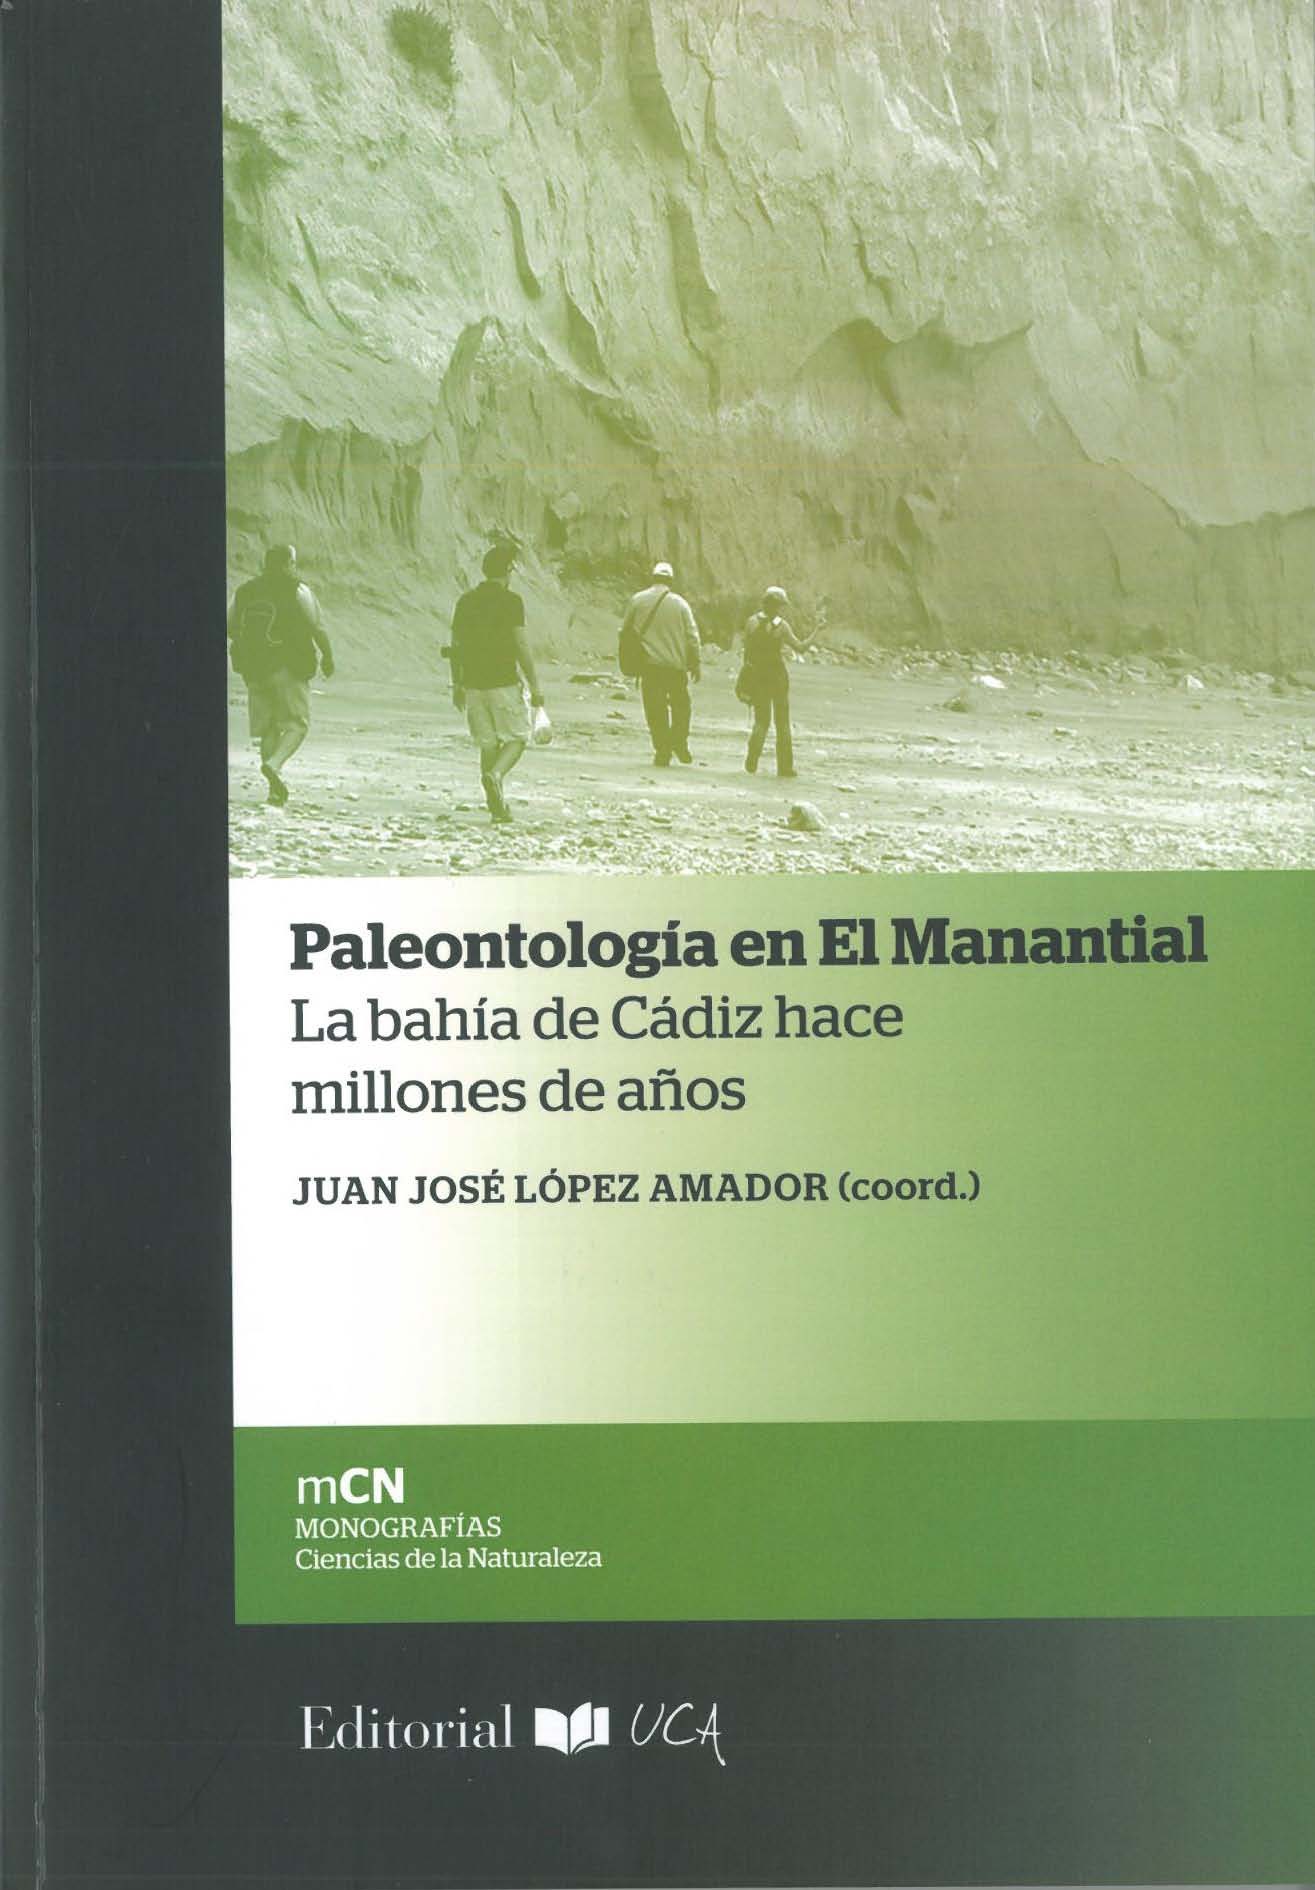 Imagen de portada del libro Paleontología en El Manantial